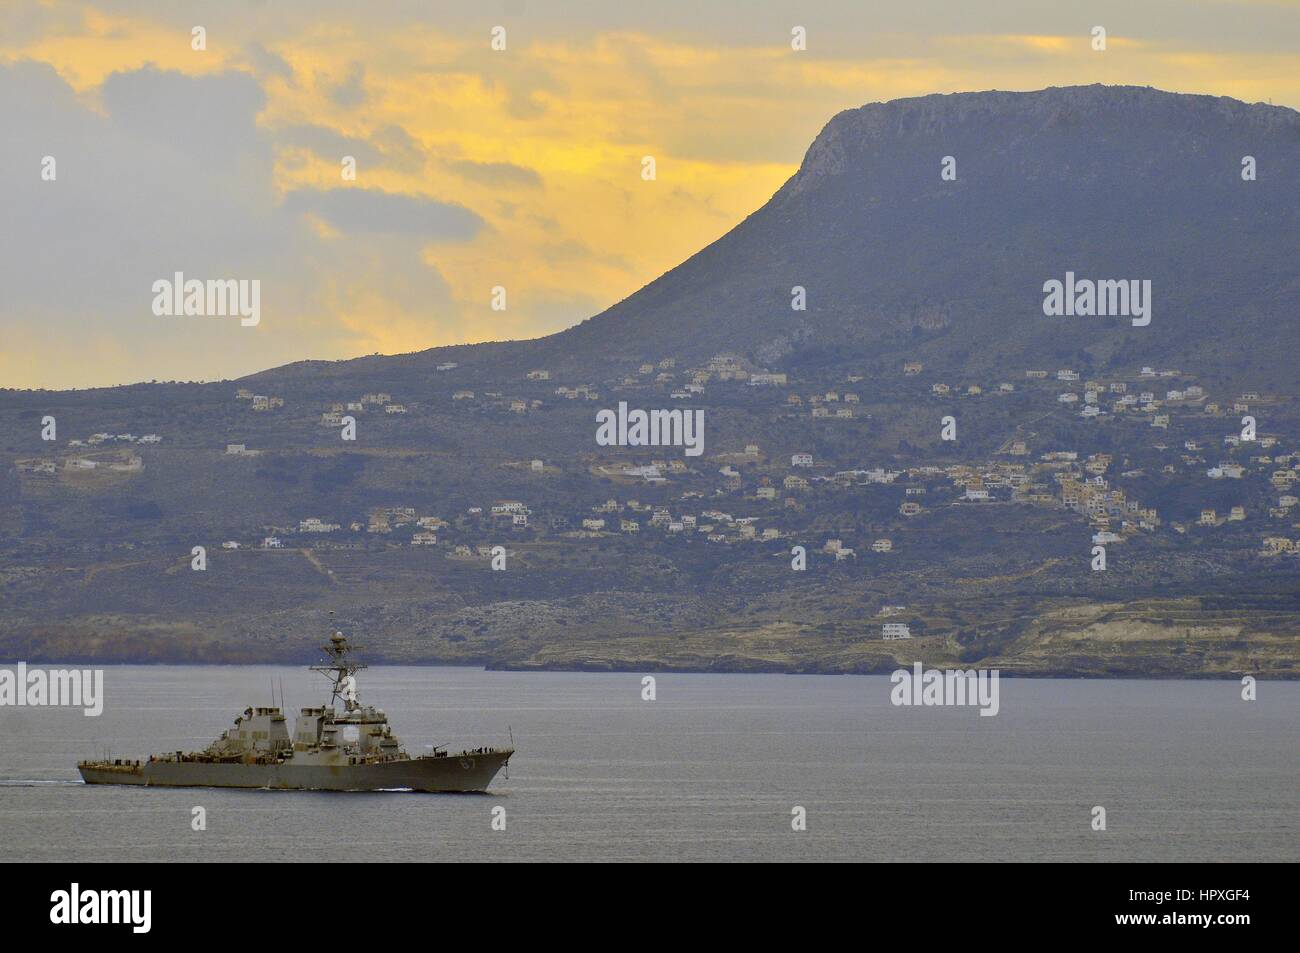 Il guidato-missile destroyer USS Cole si avvicina a Souda Bay, la Grecia per una visita di porta, 16 novembre 2012. Immagine cortesia Paolo Farley/US Navy. Foto Stock